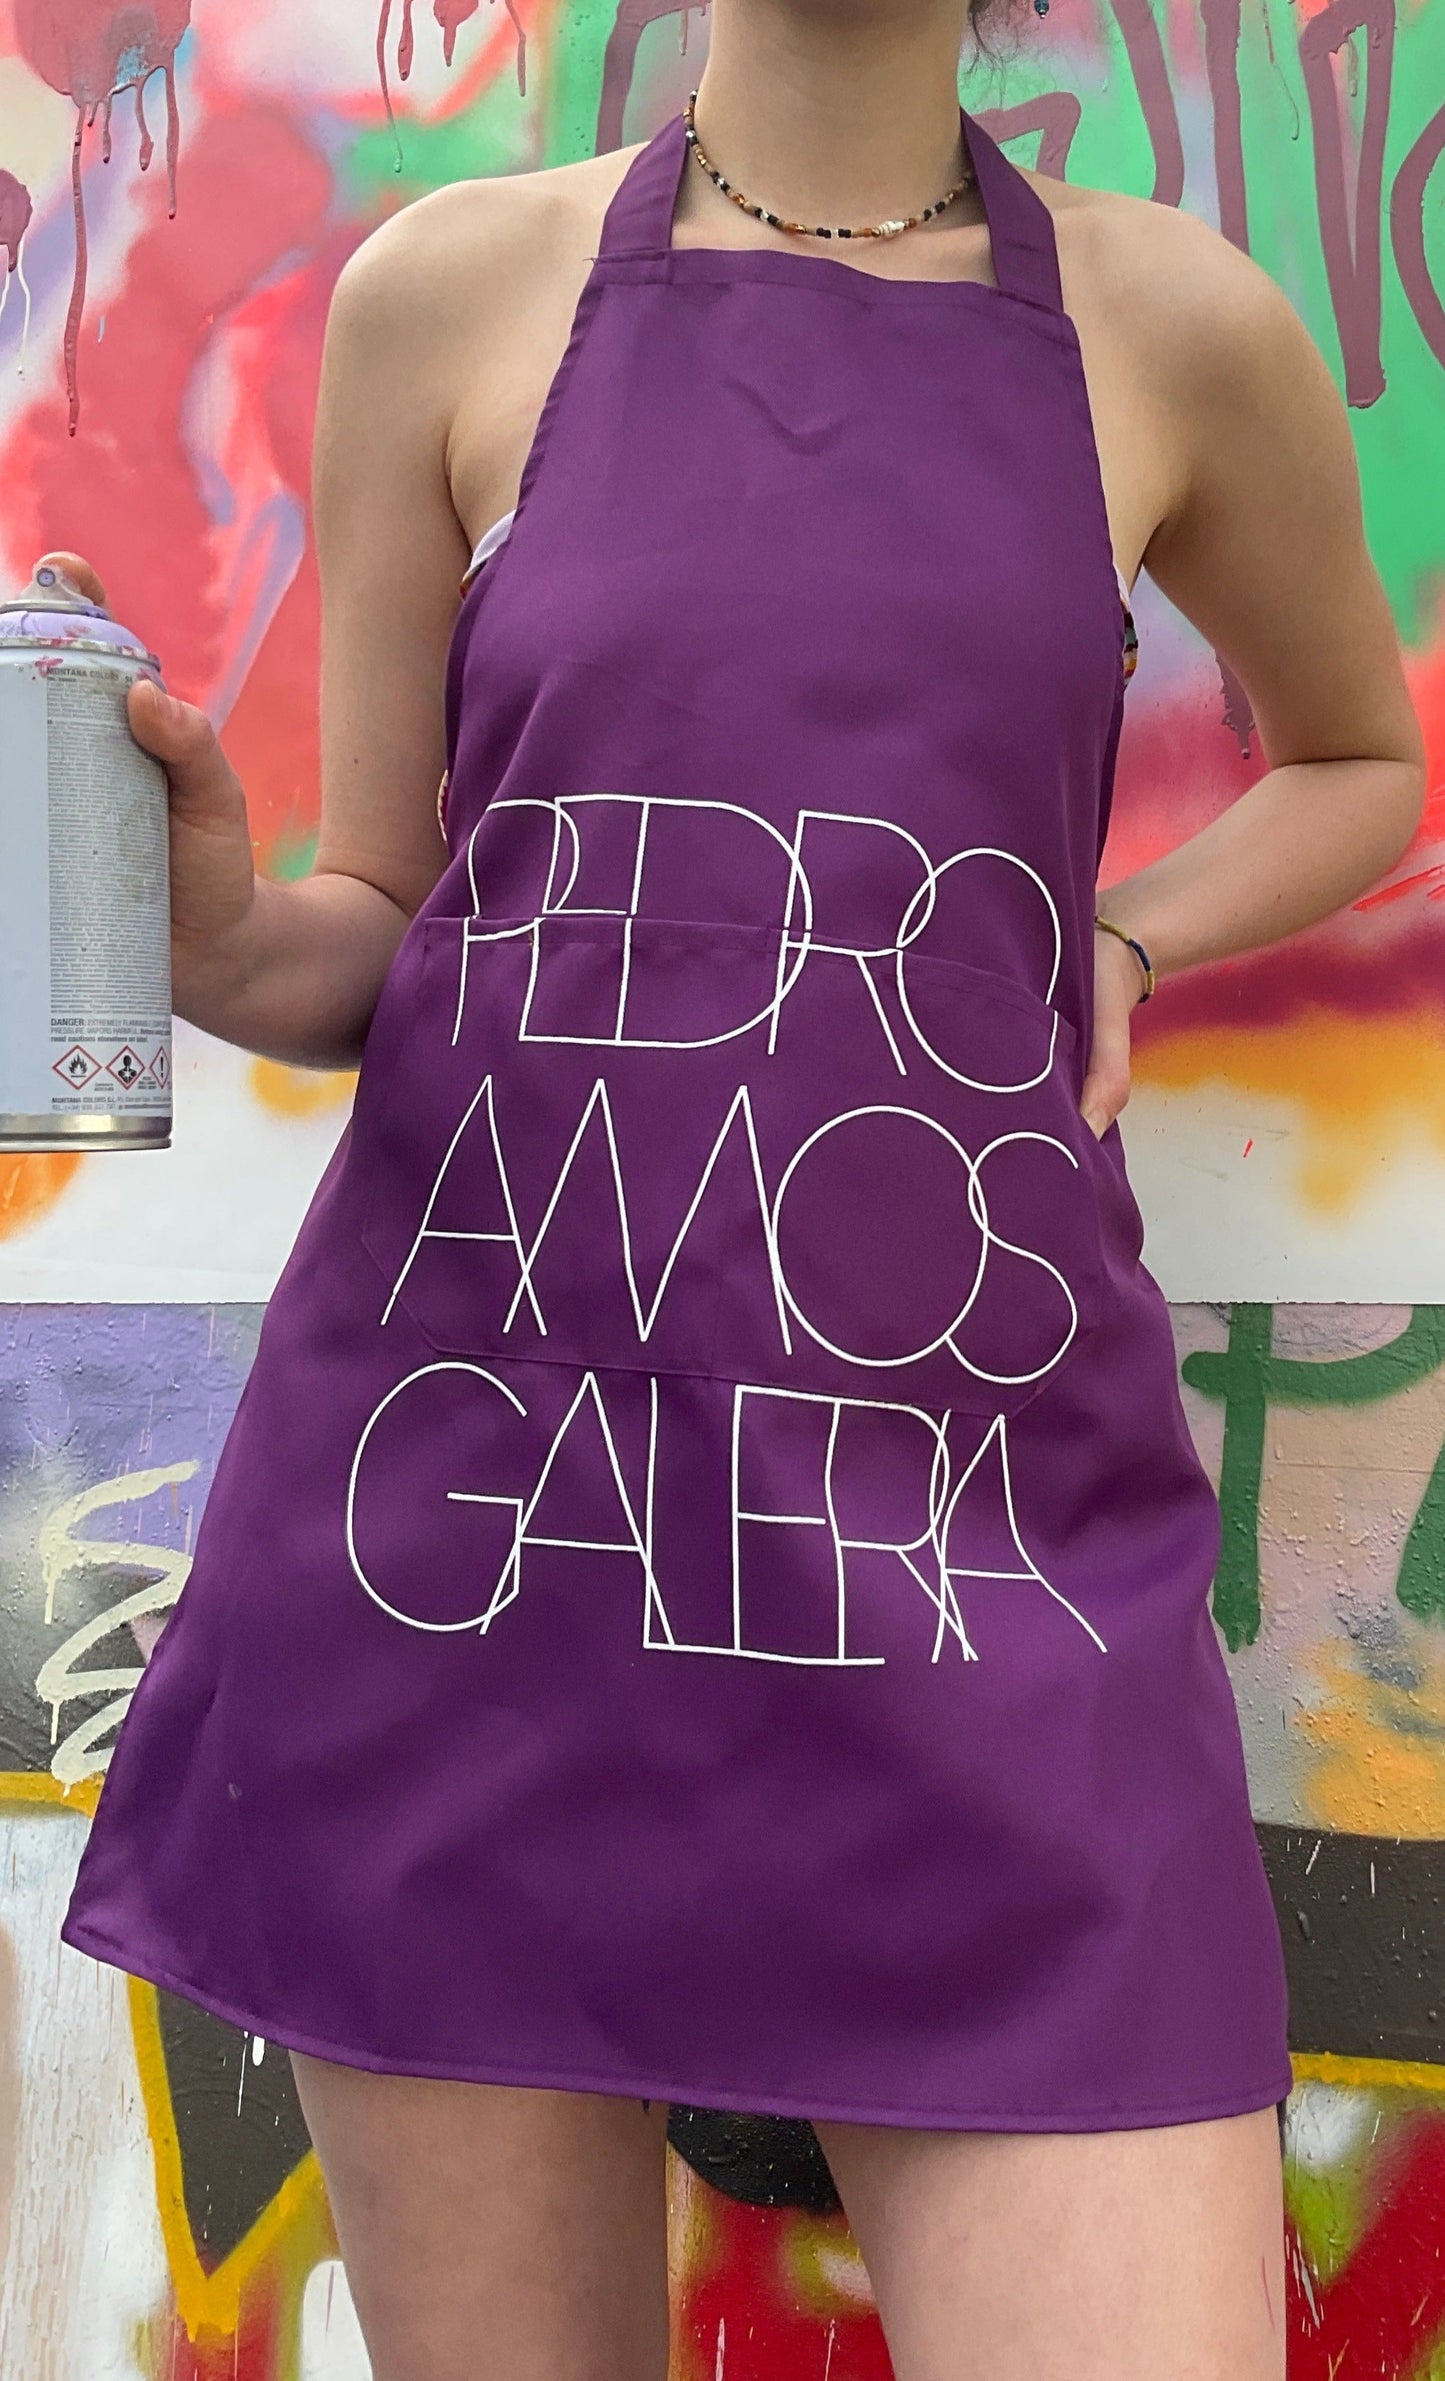 Pedro AMOS Galería Apron - Purple- with Large Galeria logo